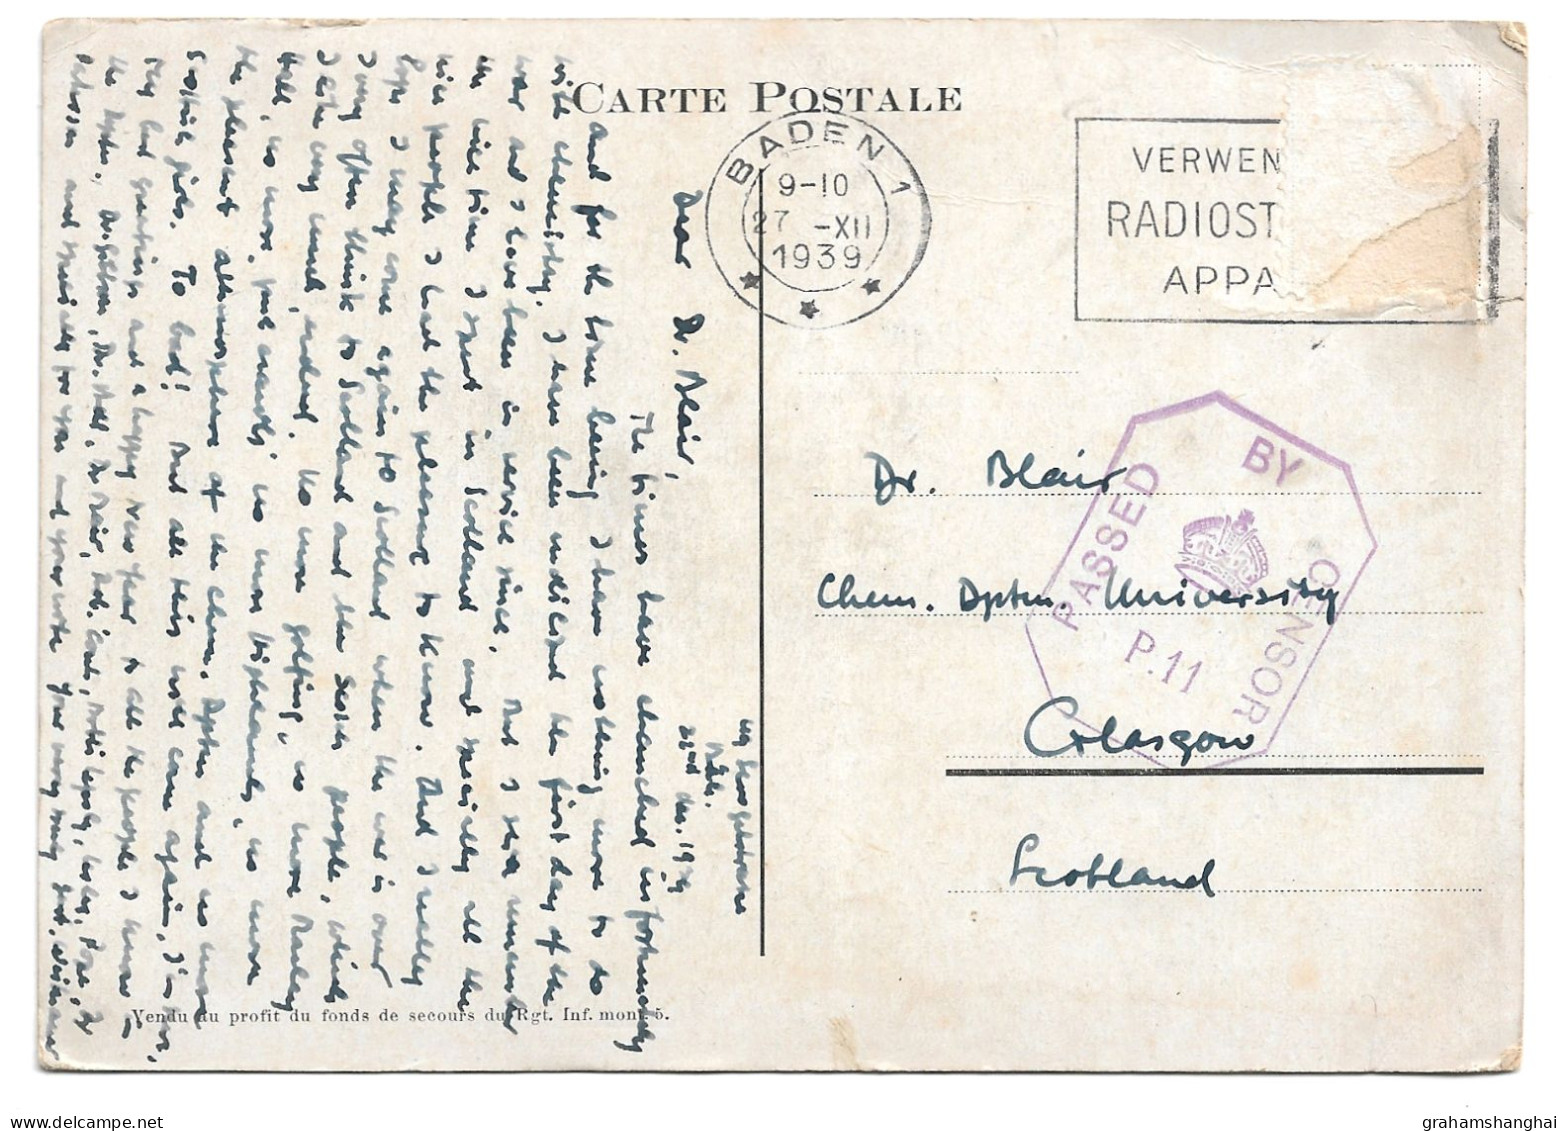 Postcard Swiss Army Bat Fus Mont 8 Mobilisation 1939 Soldier Flag Posted Censored Stamp Design - Regimente